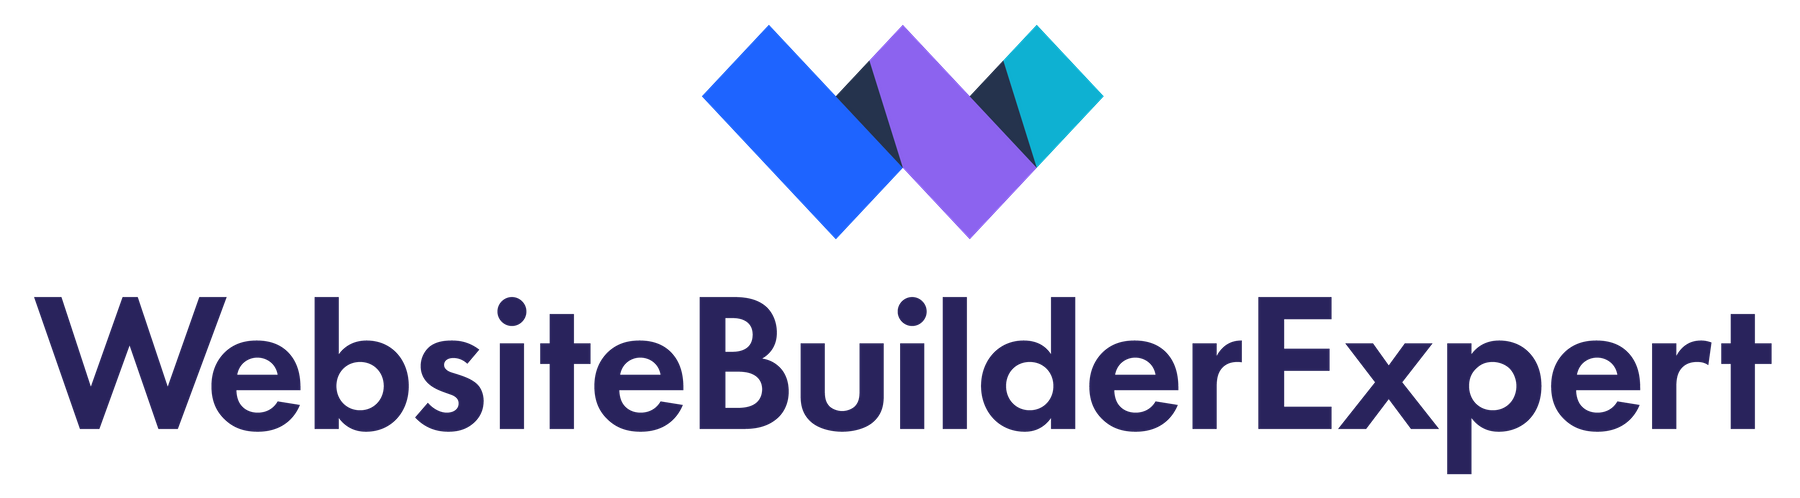 website builder expert full logo